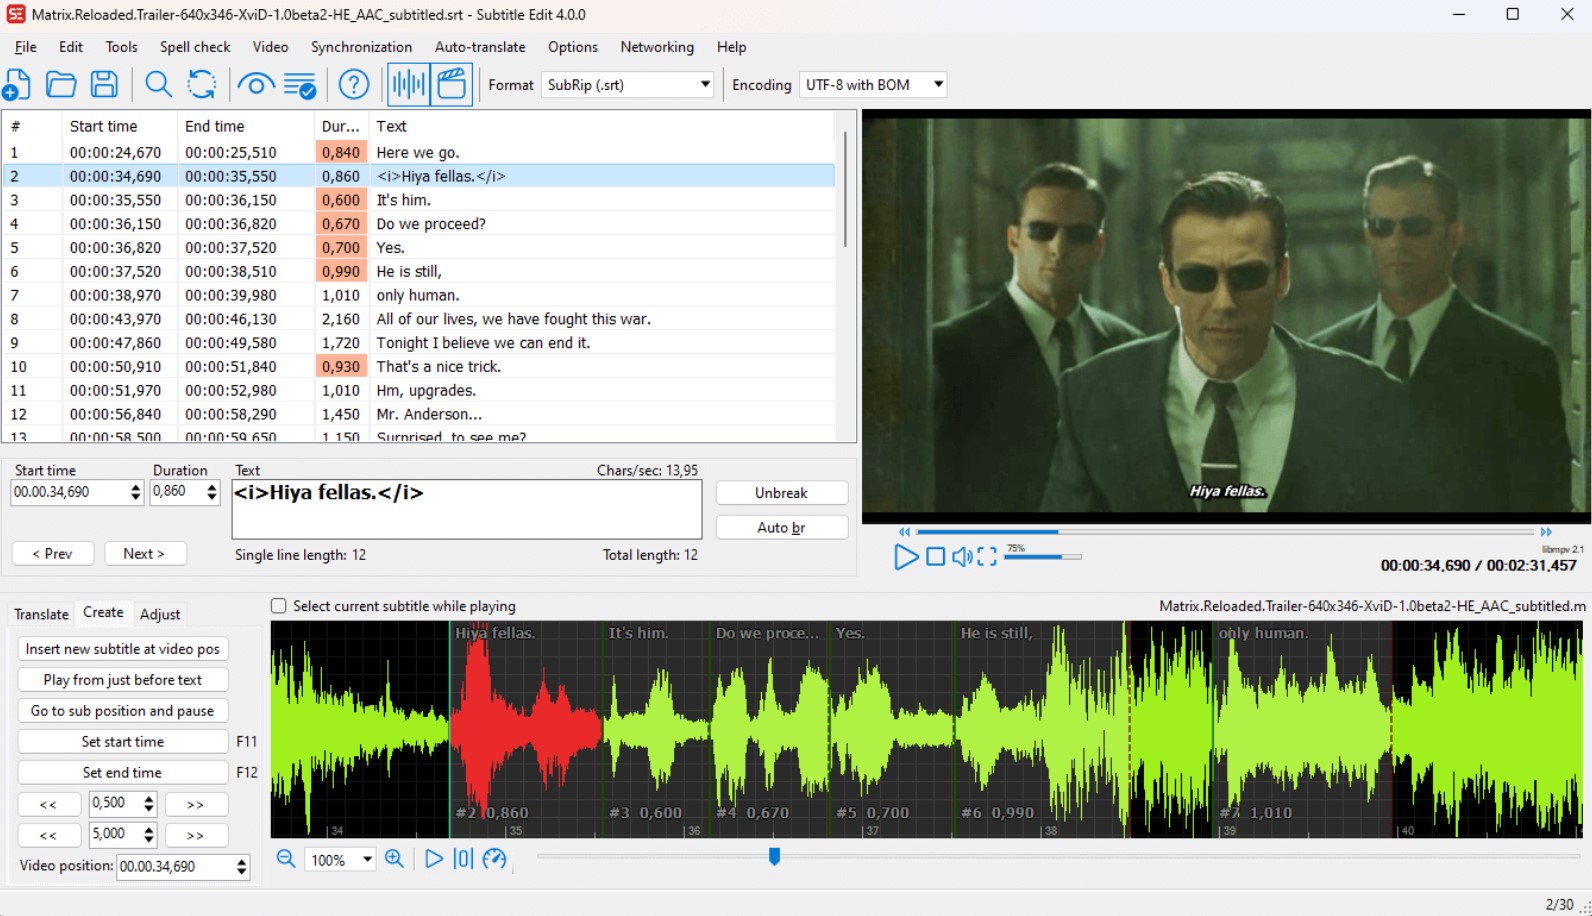 Managing video subtitles in Subtitle Edit.